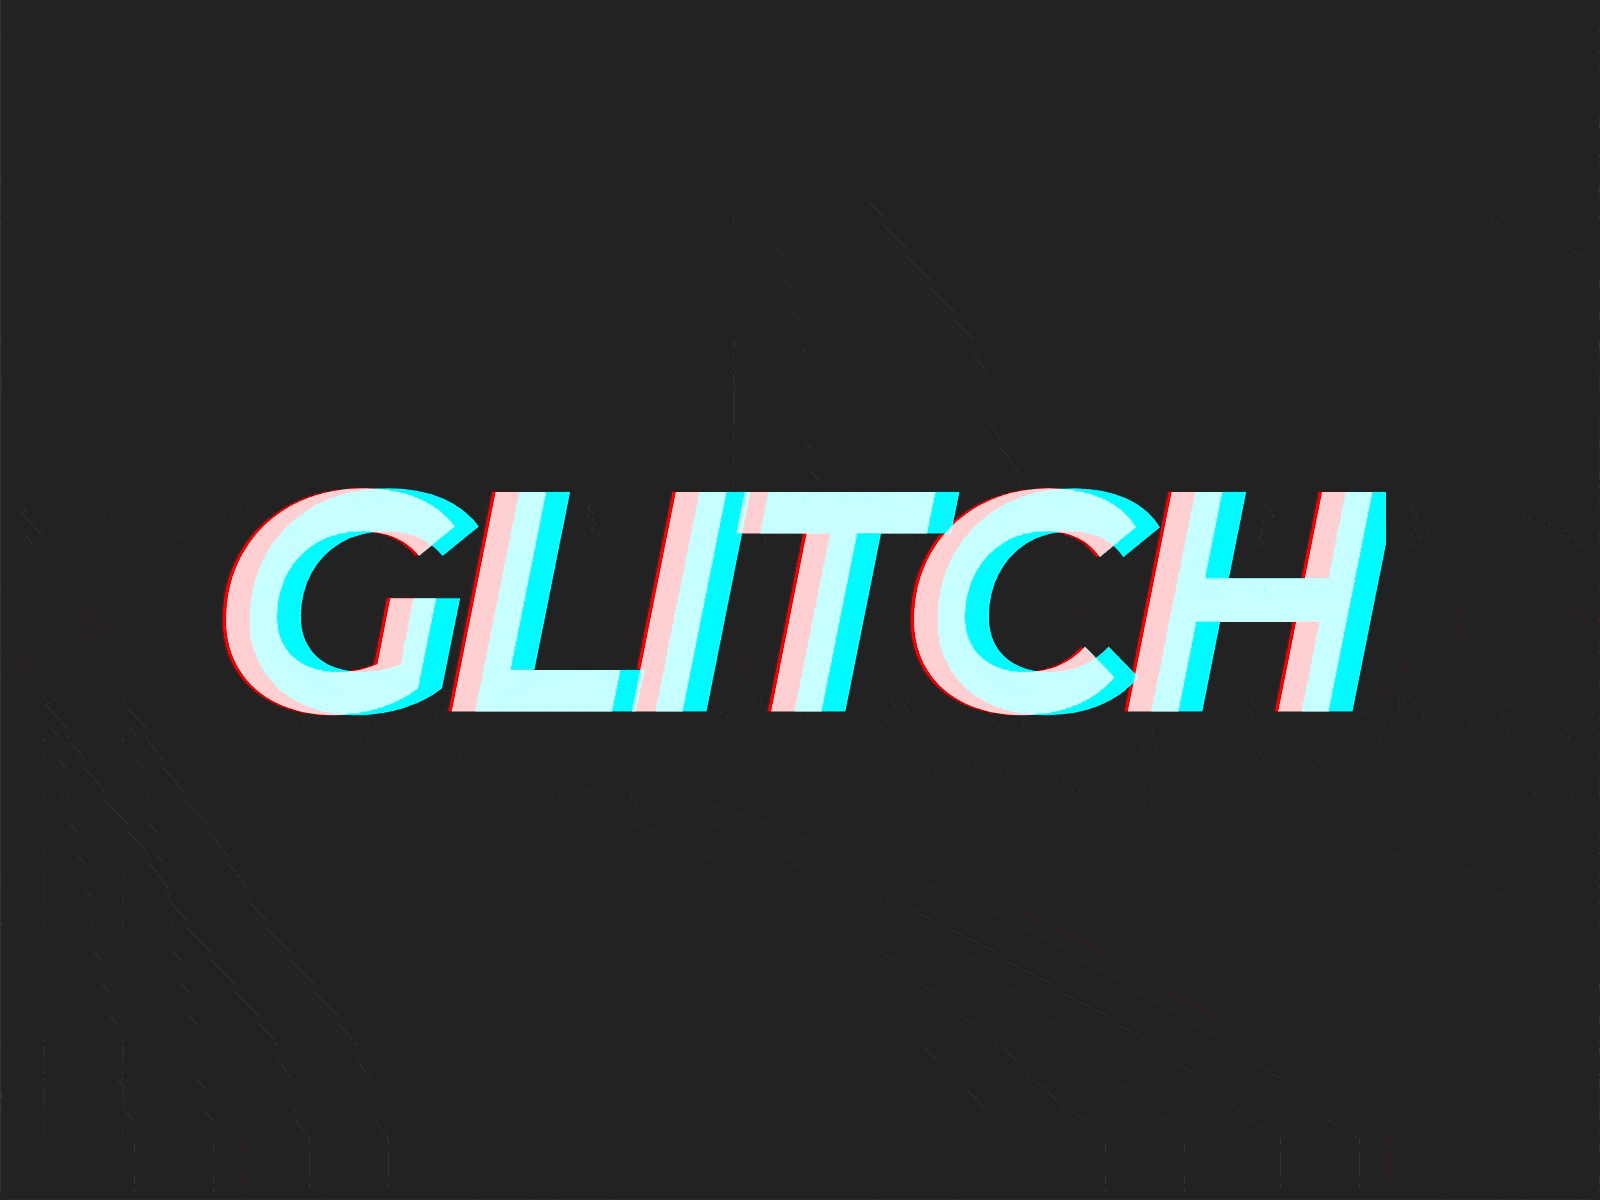 Glitch effect animation | Adobe Xd